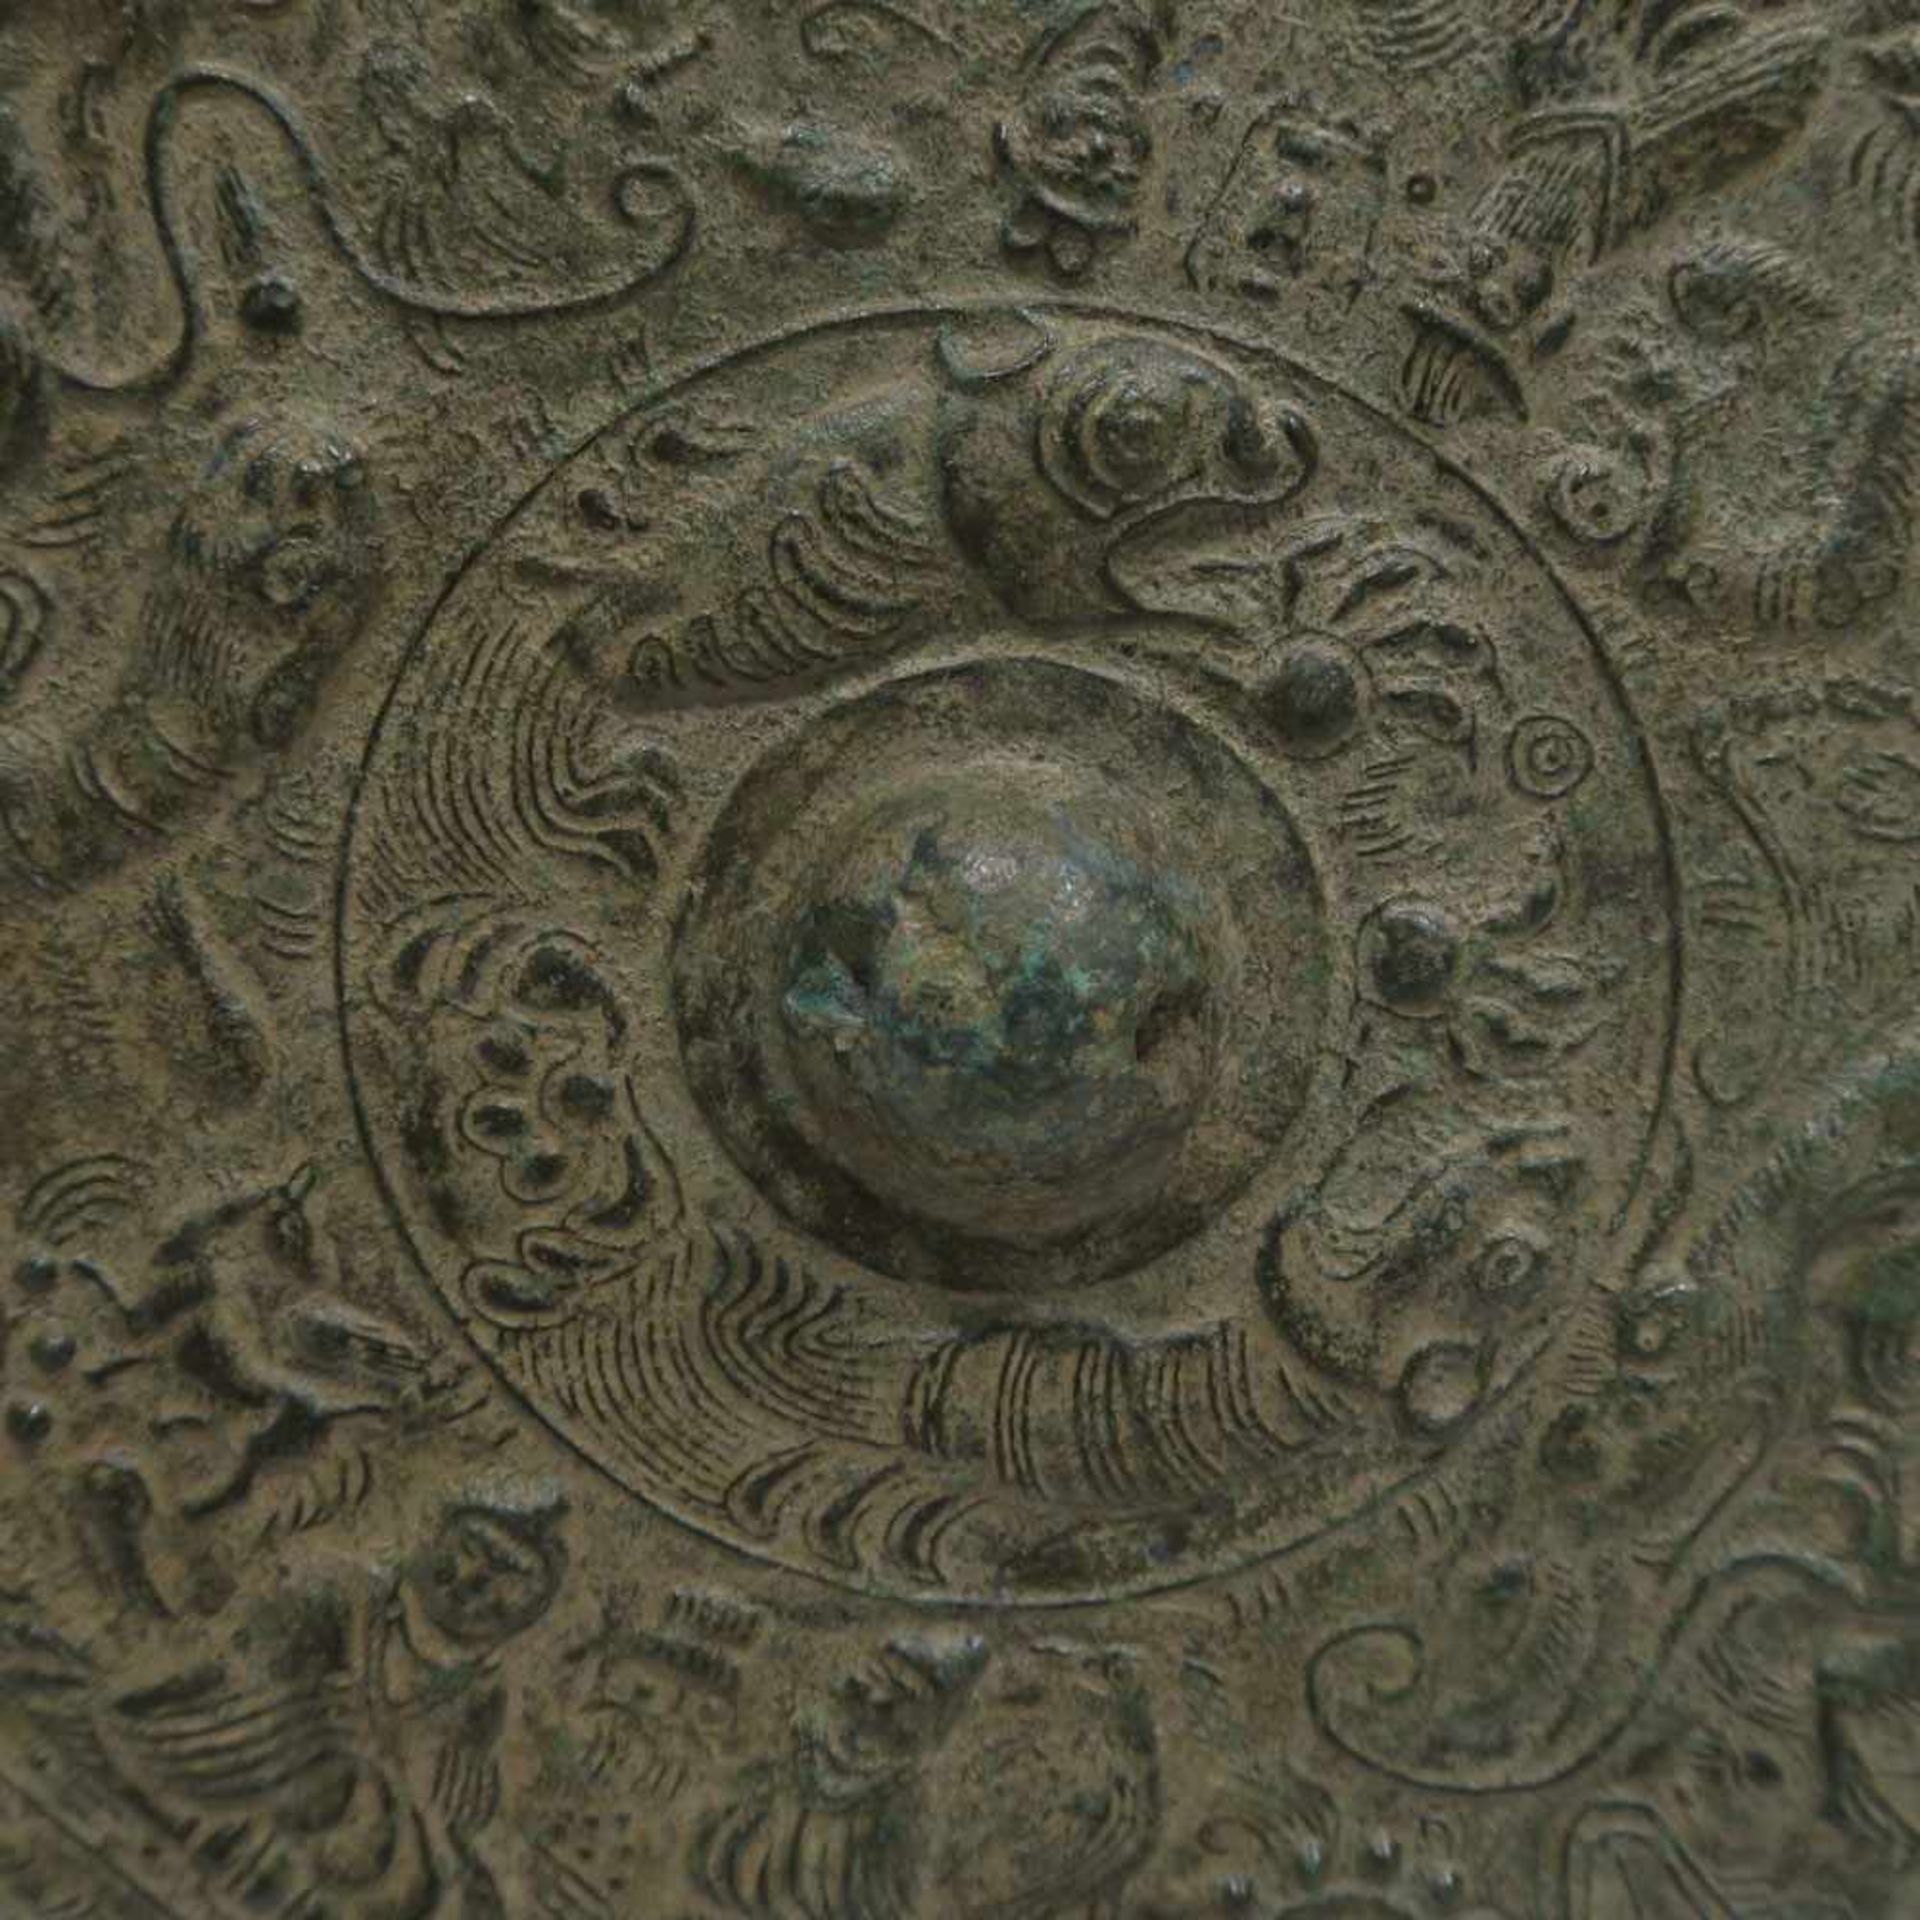 BronzespiegelChina. Bronze, grünlich patiniert. Reliefdekor mit Figuren, Tigern u.a. Ø 22,5 cm. - Bild 3 aus 8